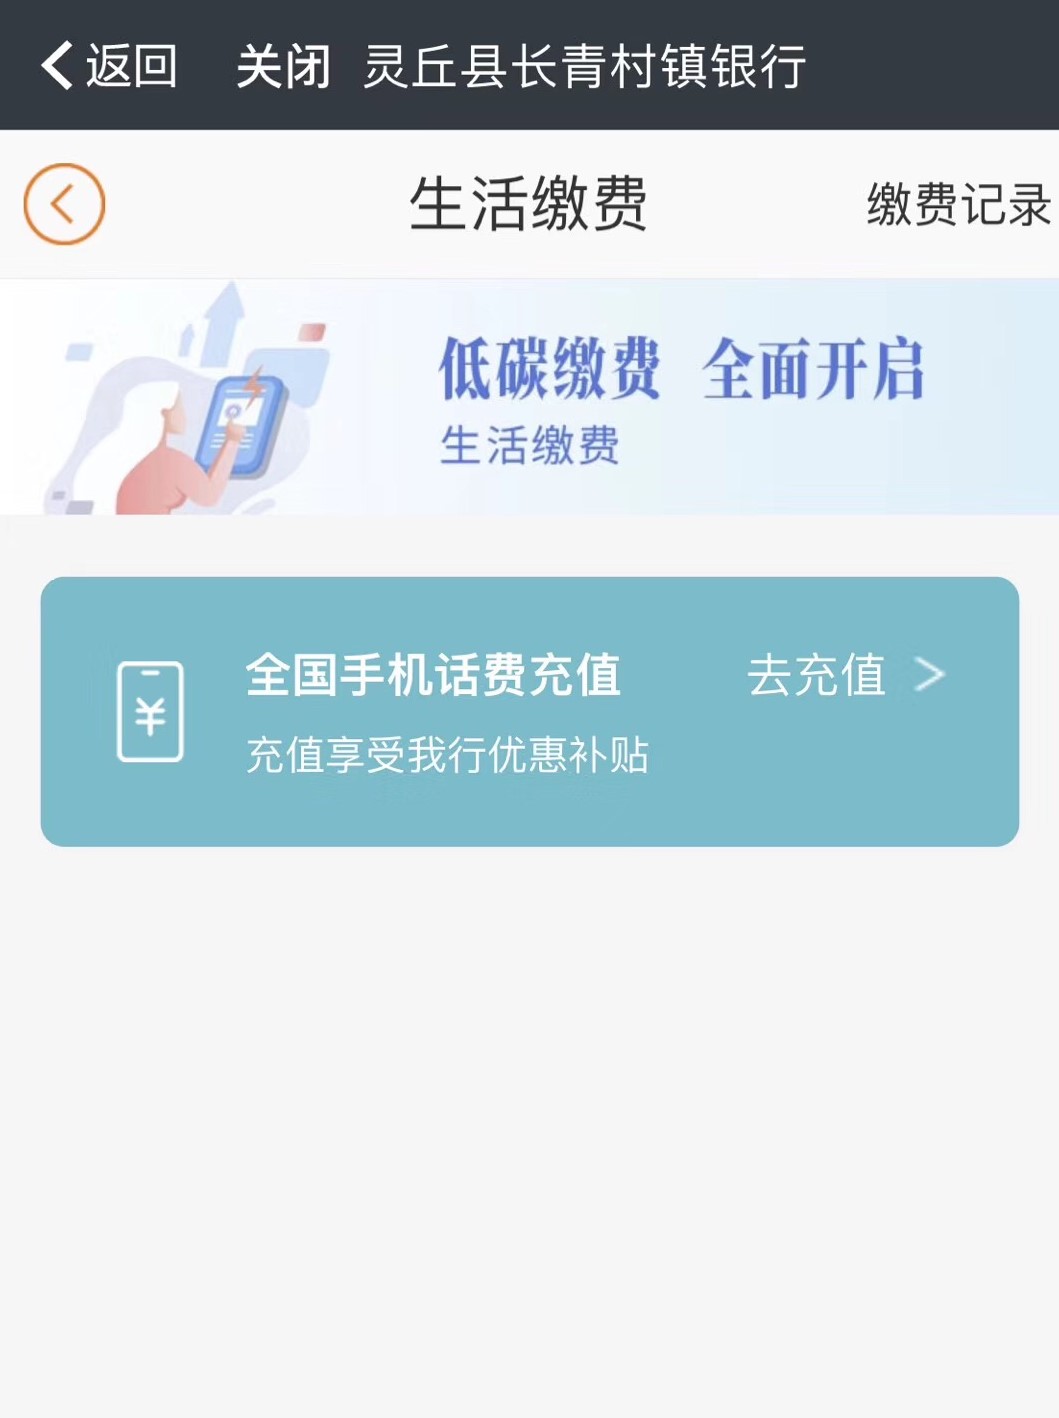 【灵丘长青村镇银行】手机银行缴话费，本行卡可享受9.95折的优惠